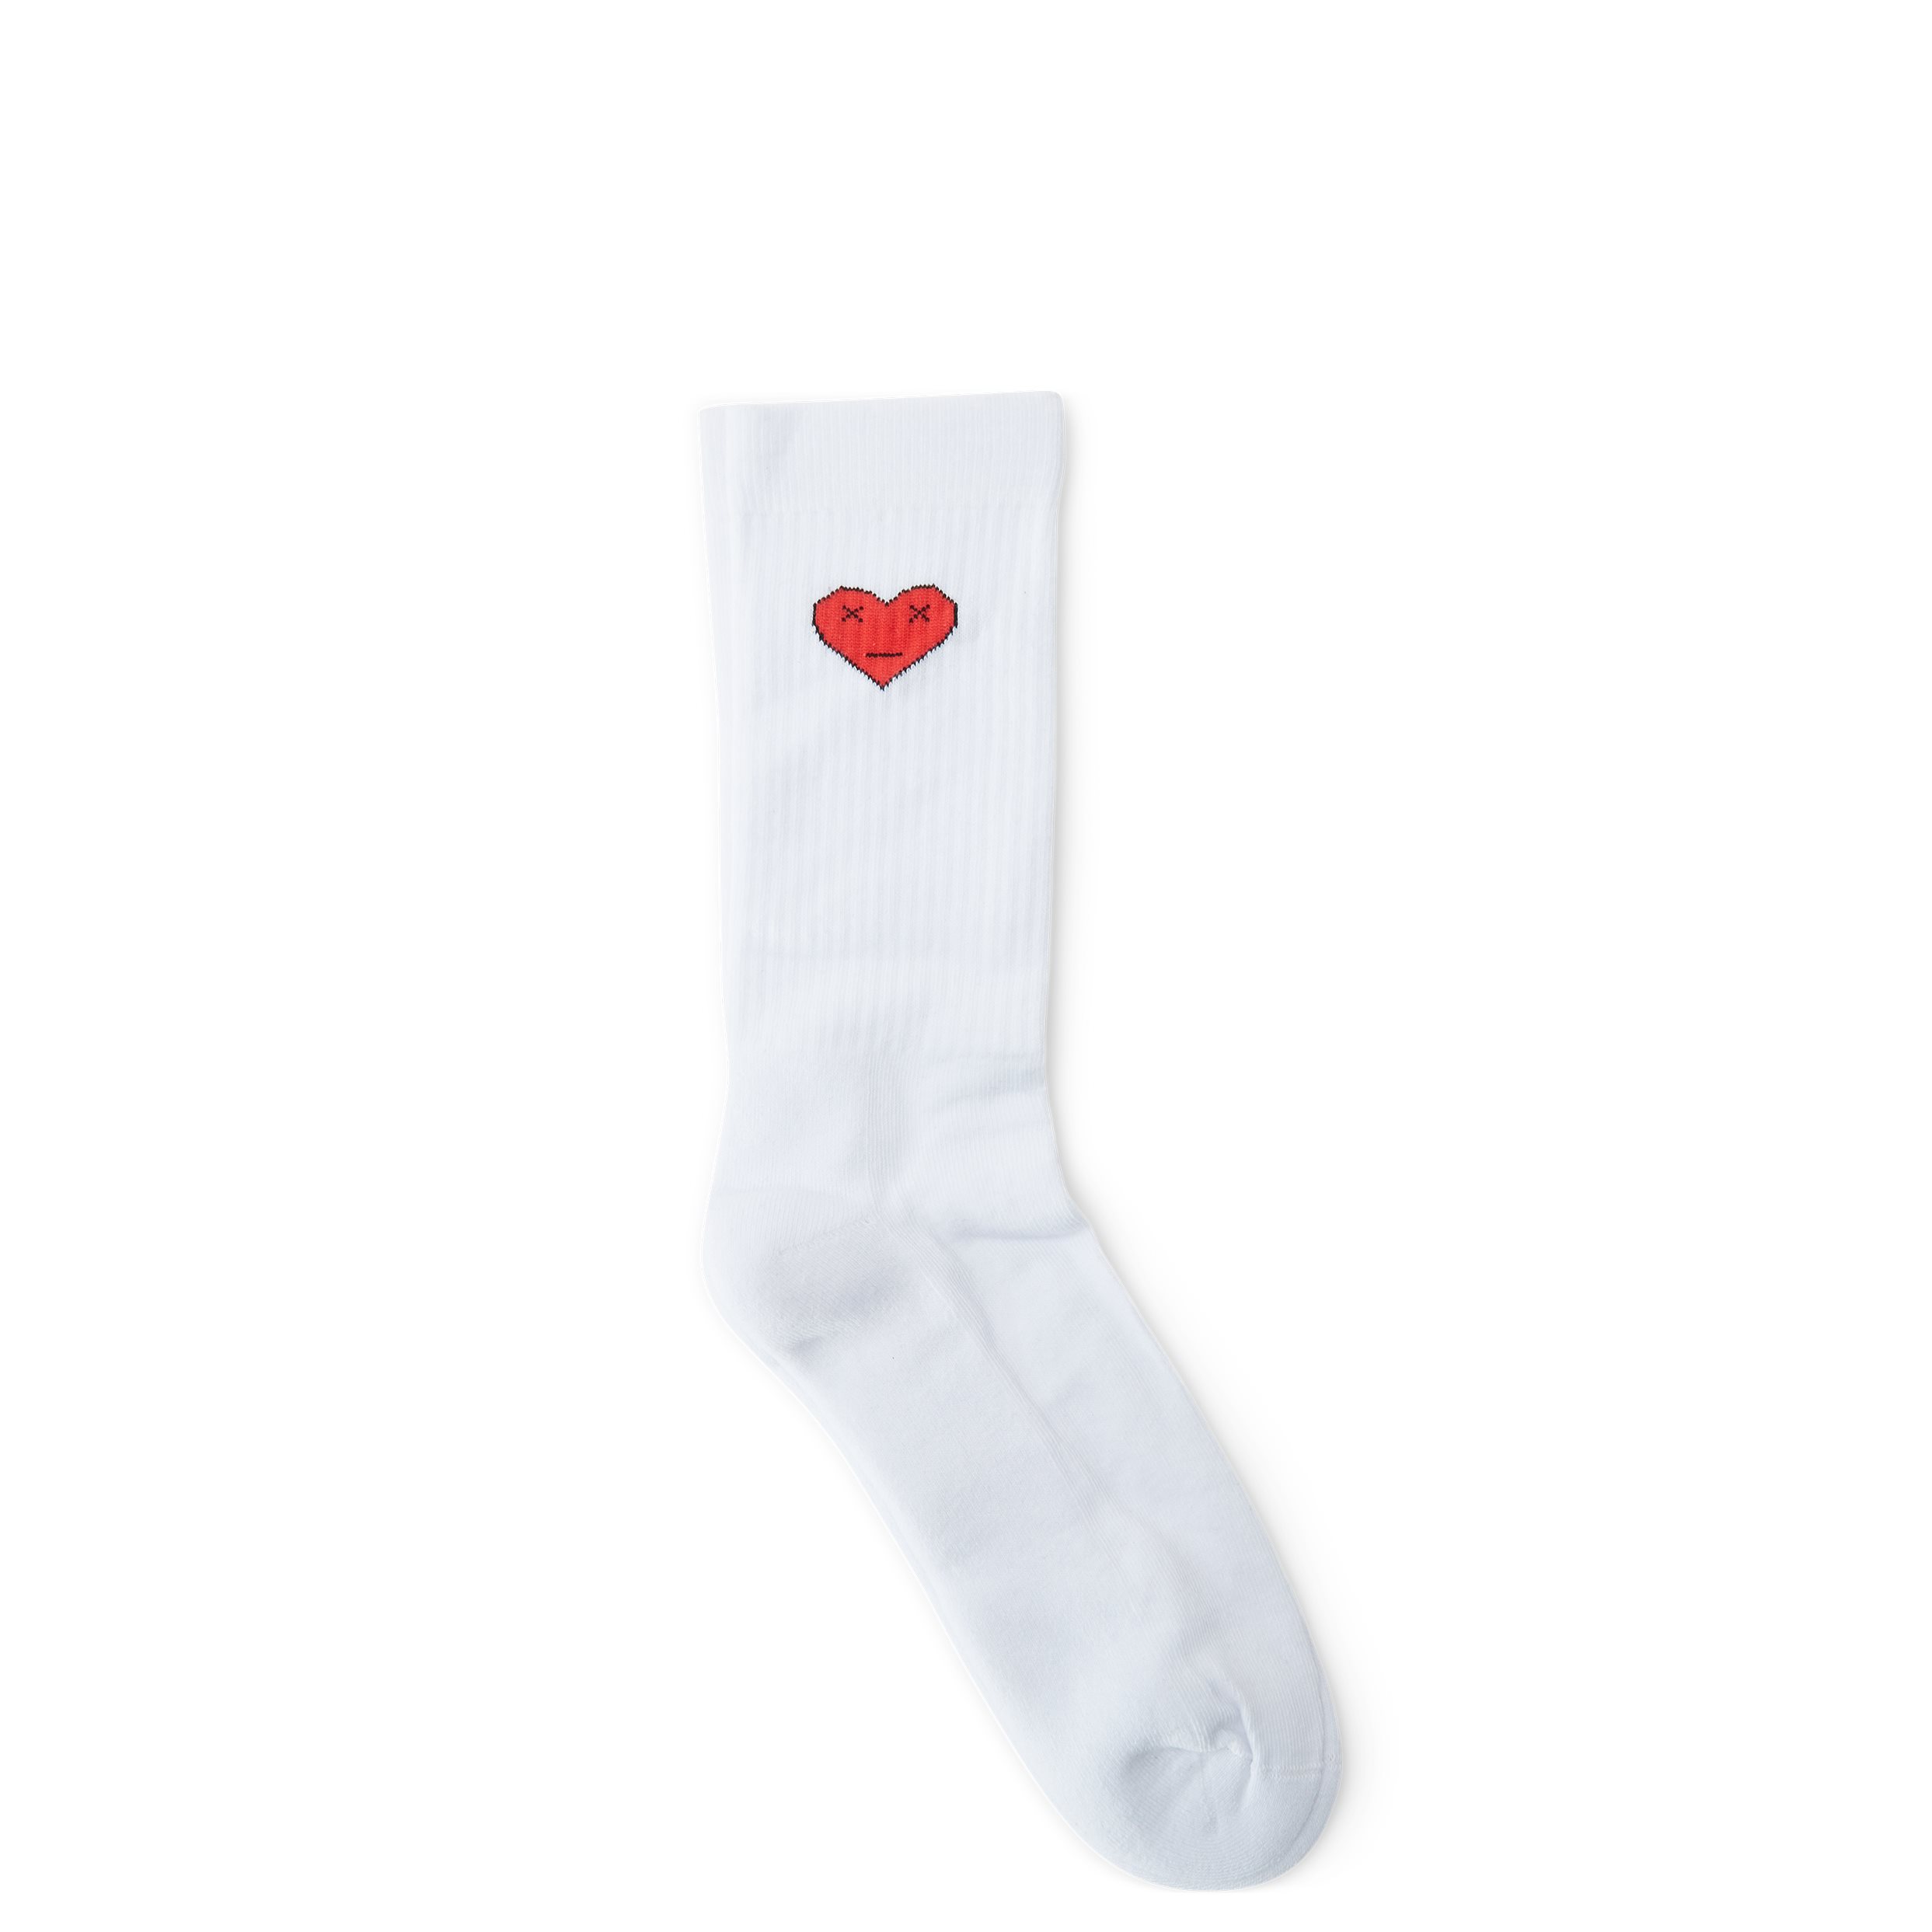 qUINT Socks HEART 115-12527 White